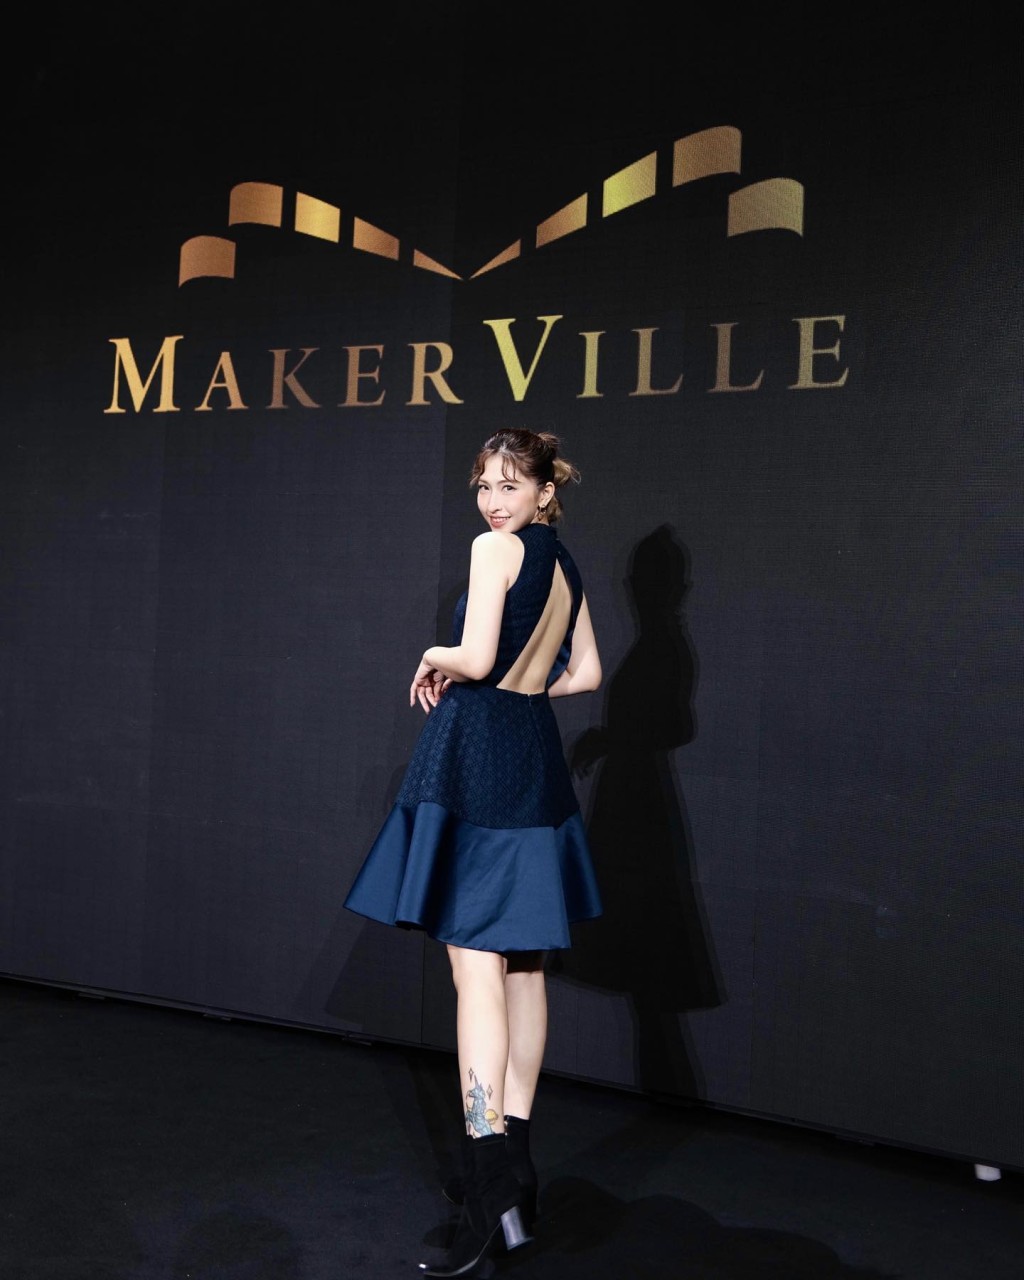 蔡宝欣是MakerVille艺人。